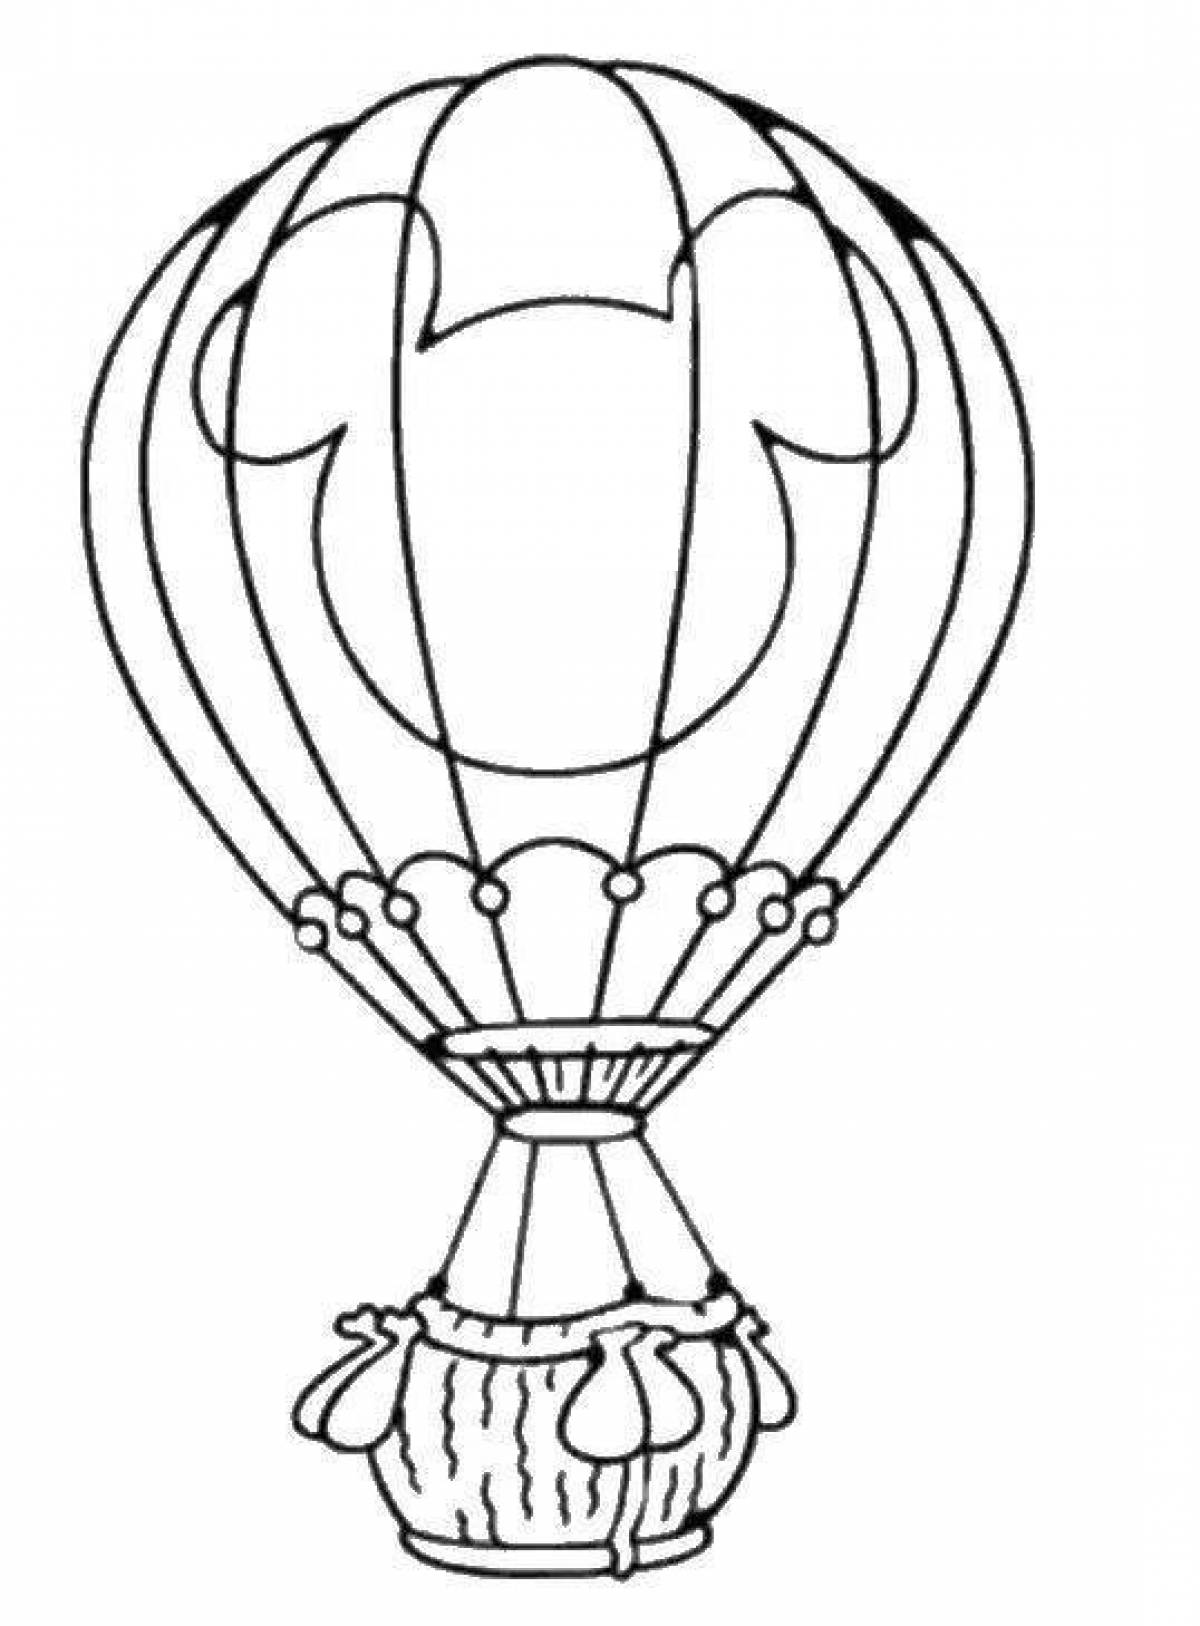 Увлекательная раскраска «воздушный шар с корзиной» для детей